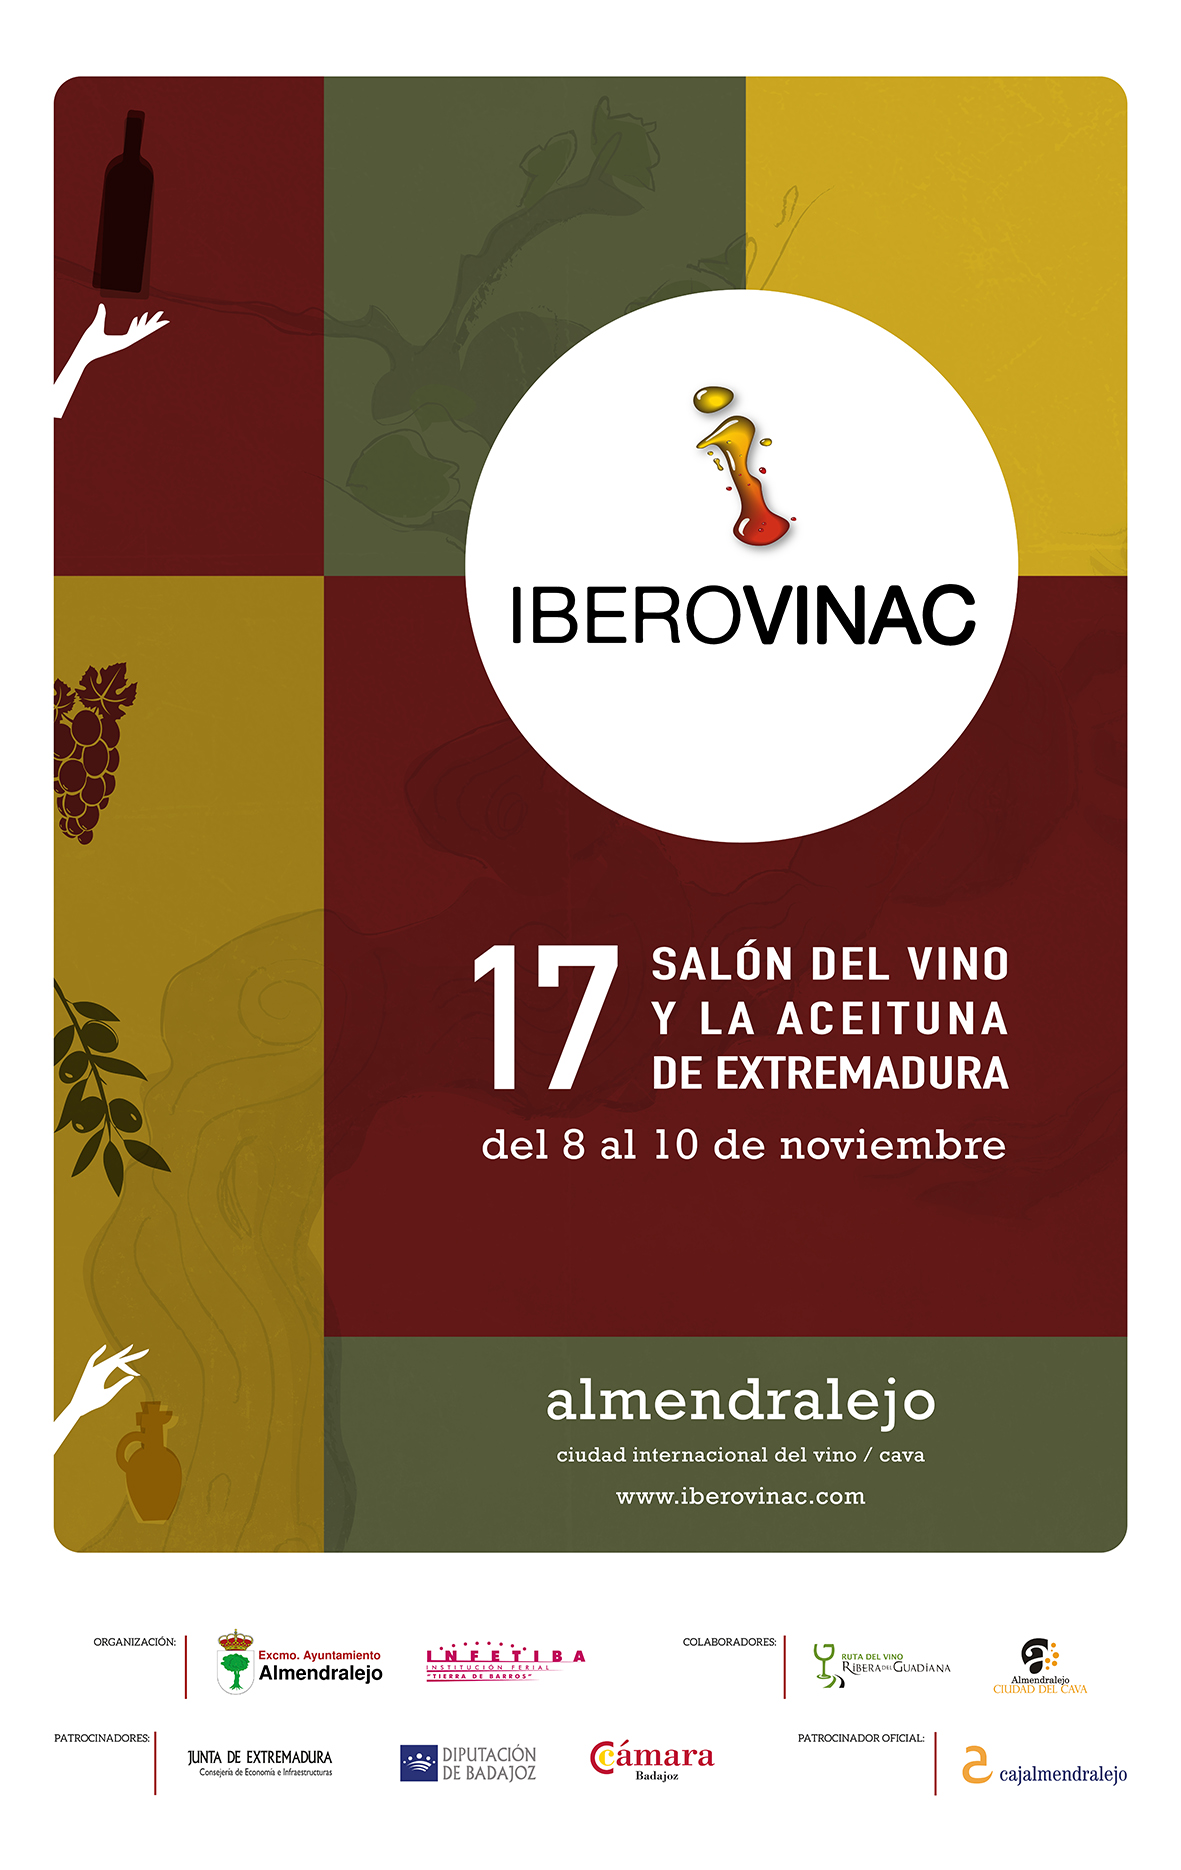 Iberovinac 2016 feria del vino y la aceituna de almendralejo